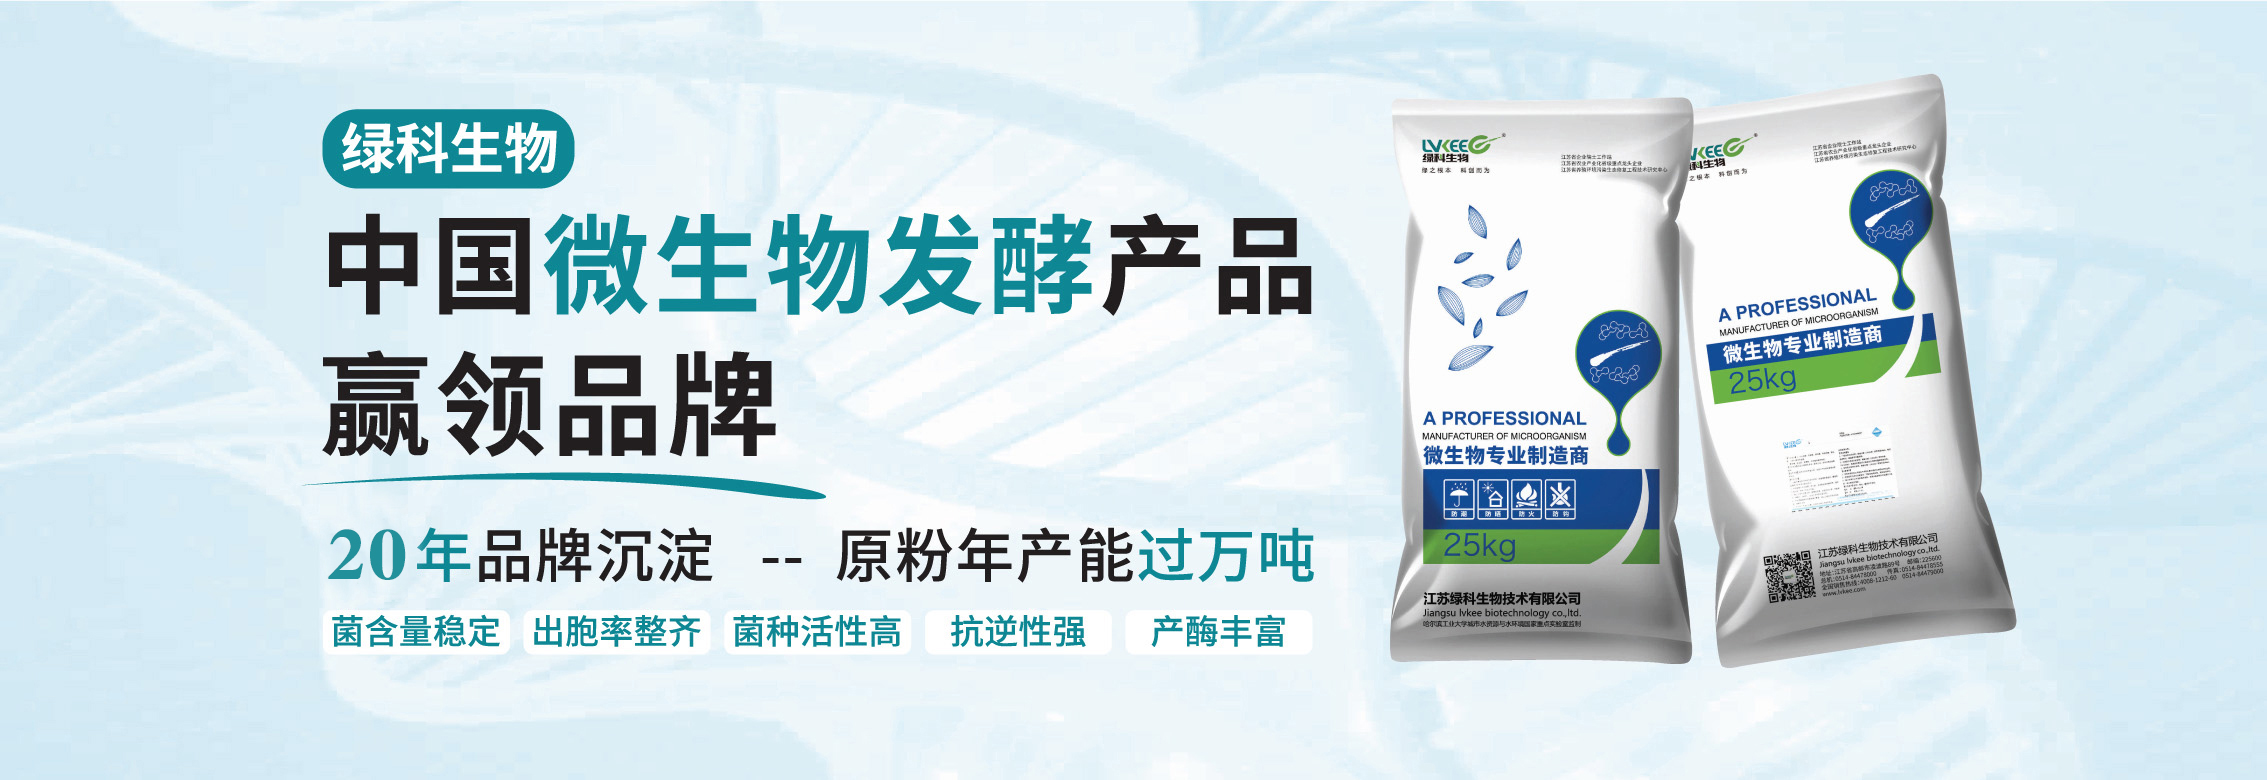 绿科生物致力于成为中国微生物发酵产品赢领品牌